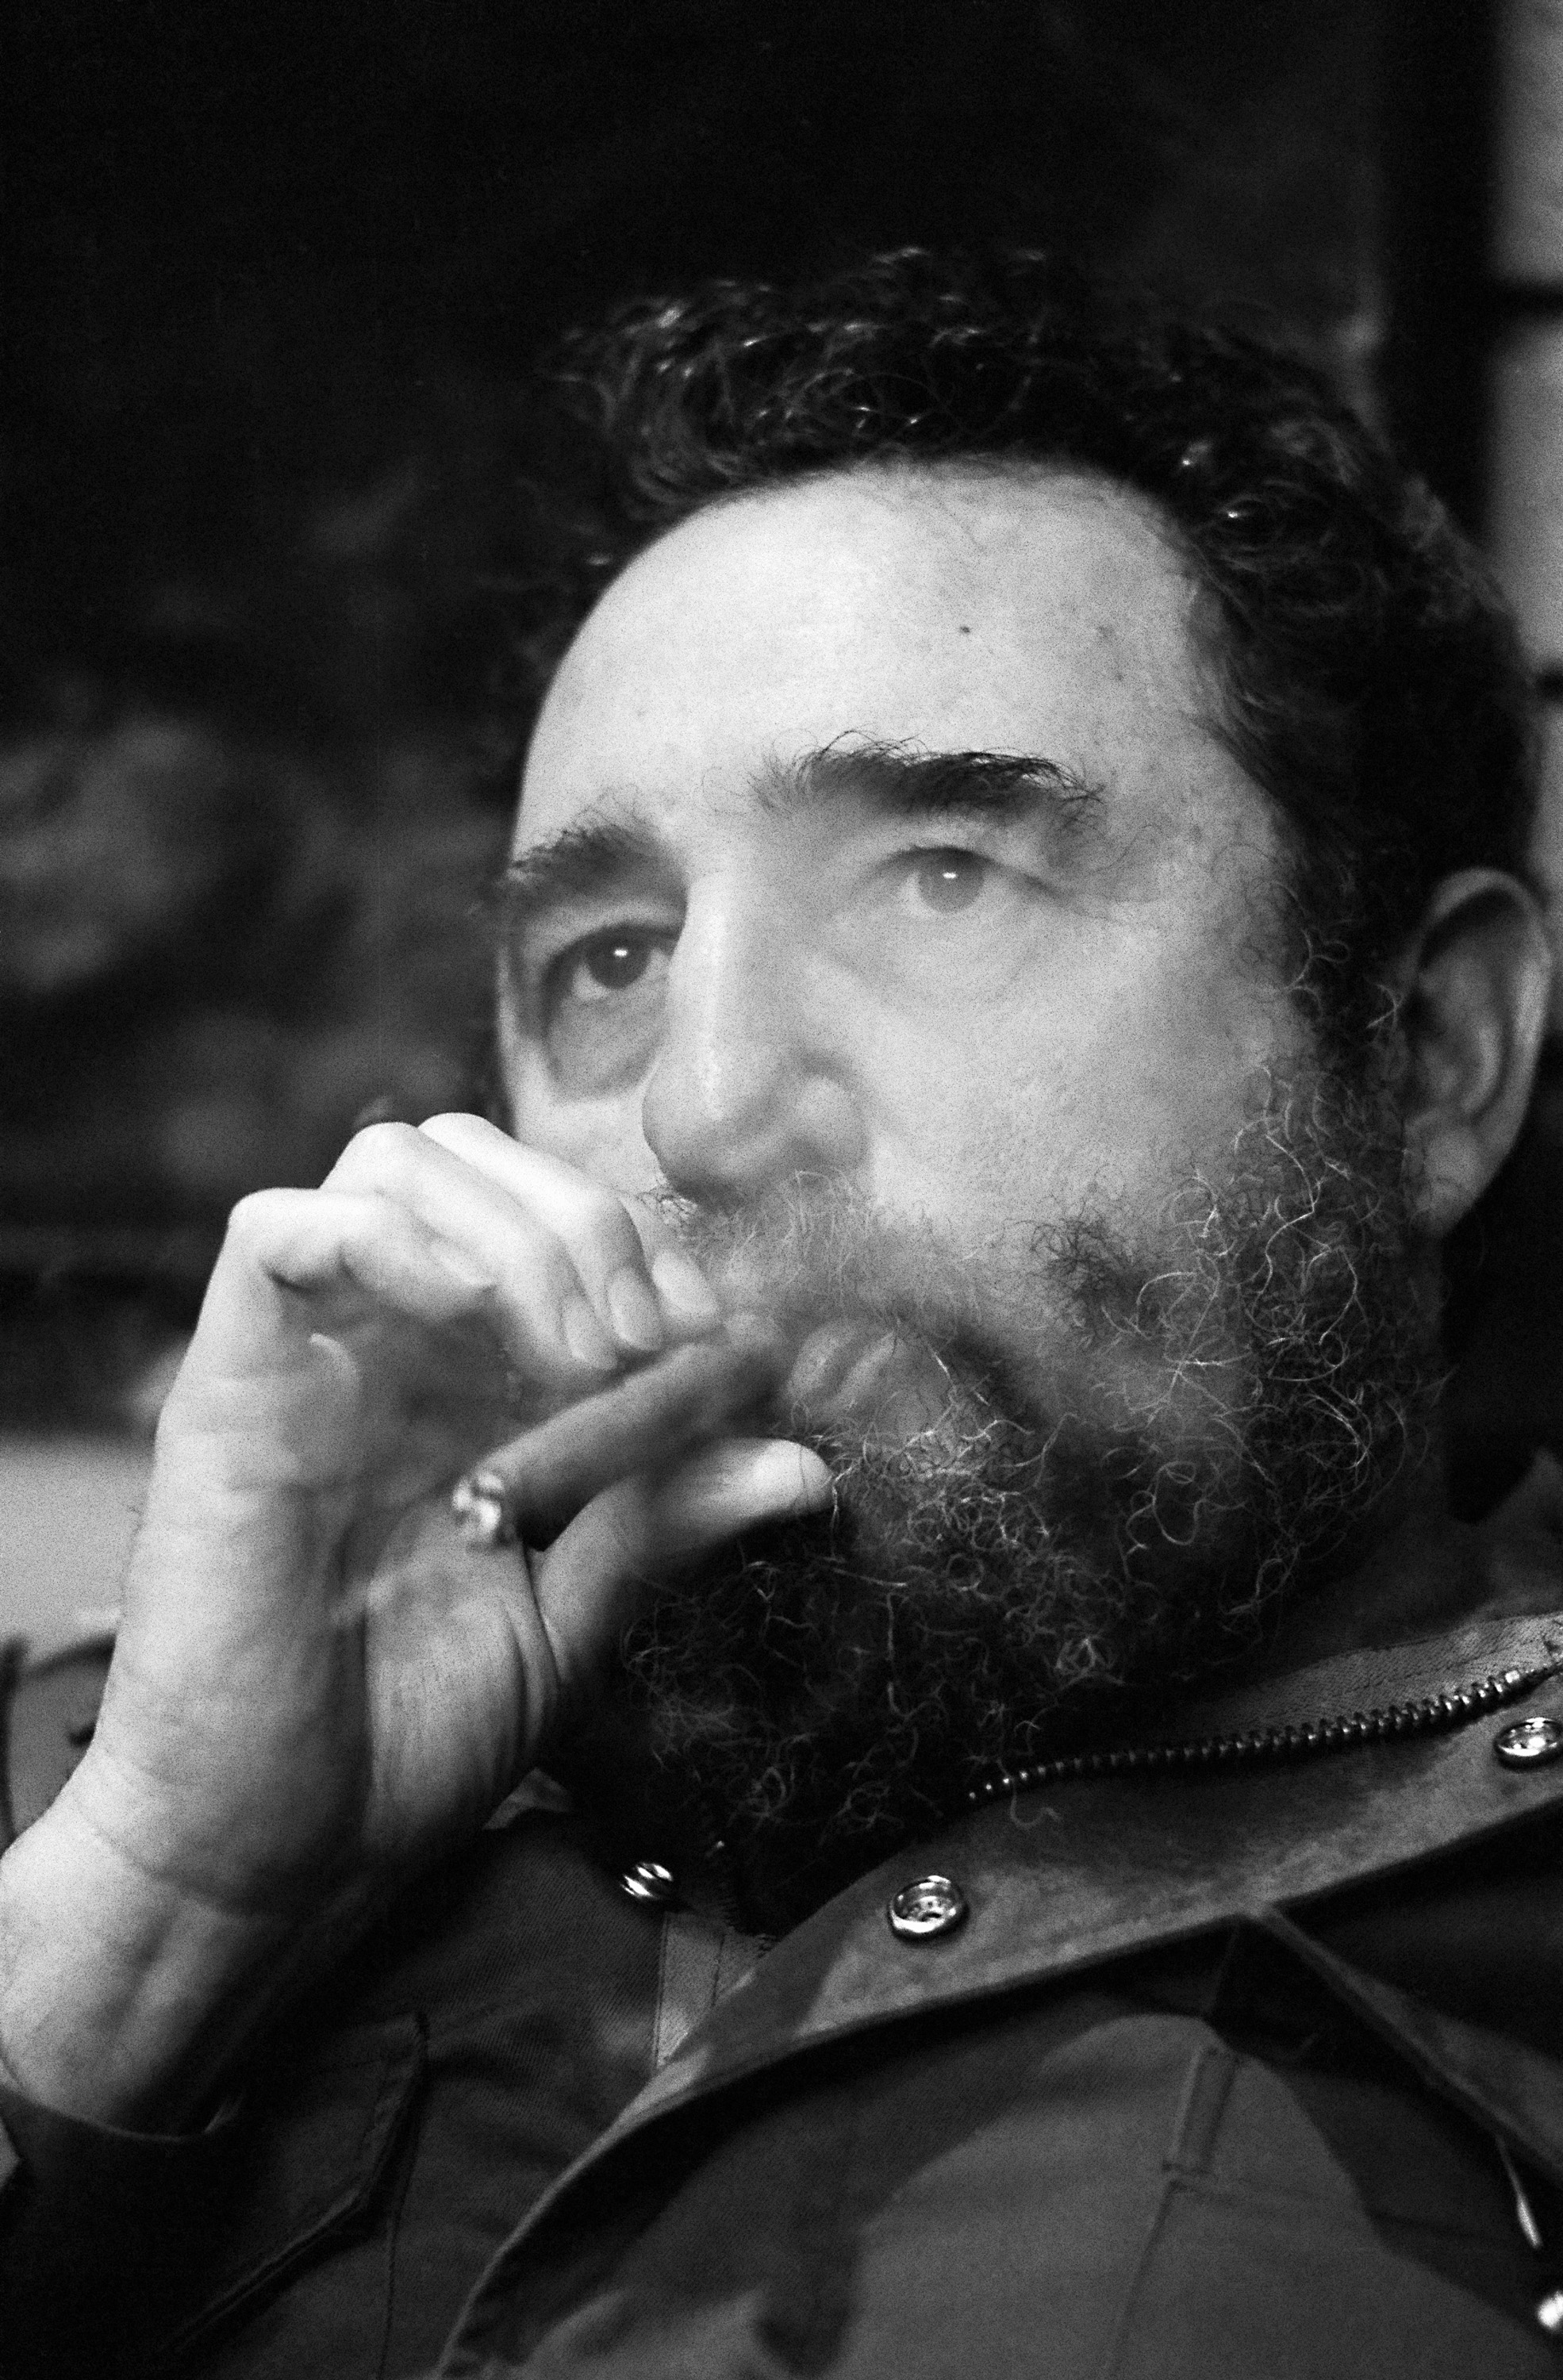 Fidel Castro Left Mark on Somalia, Horn of Africa